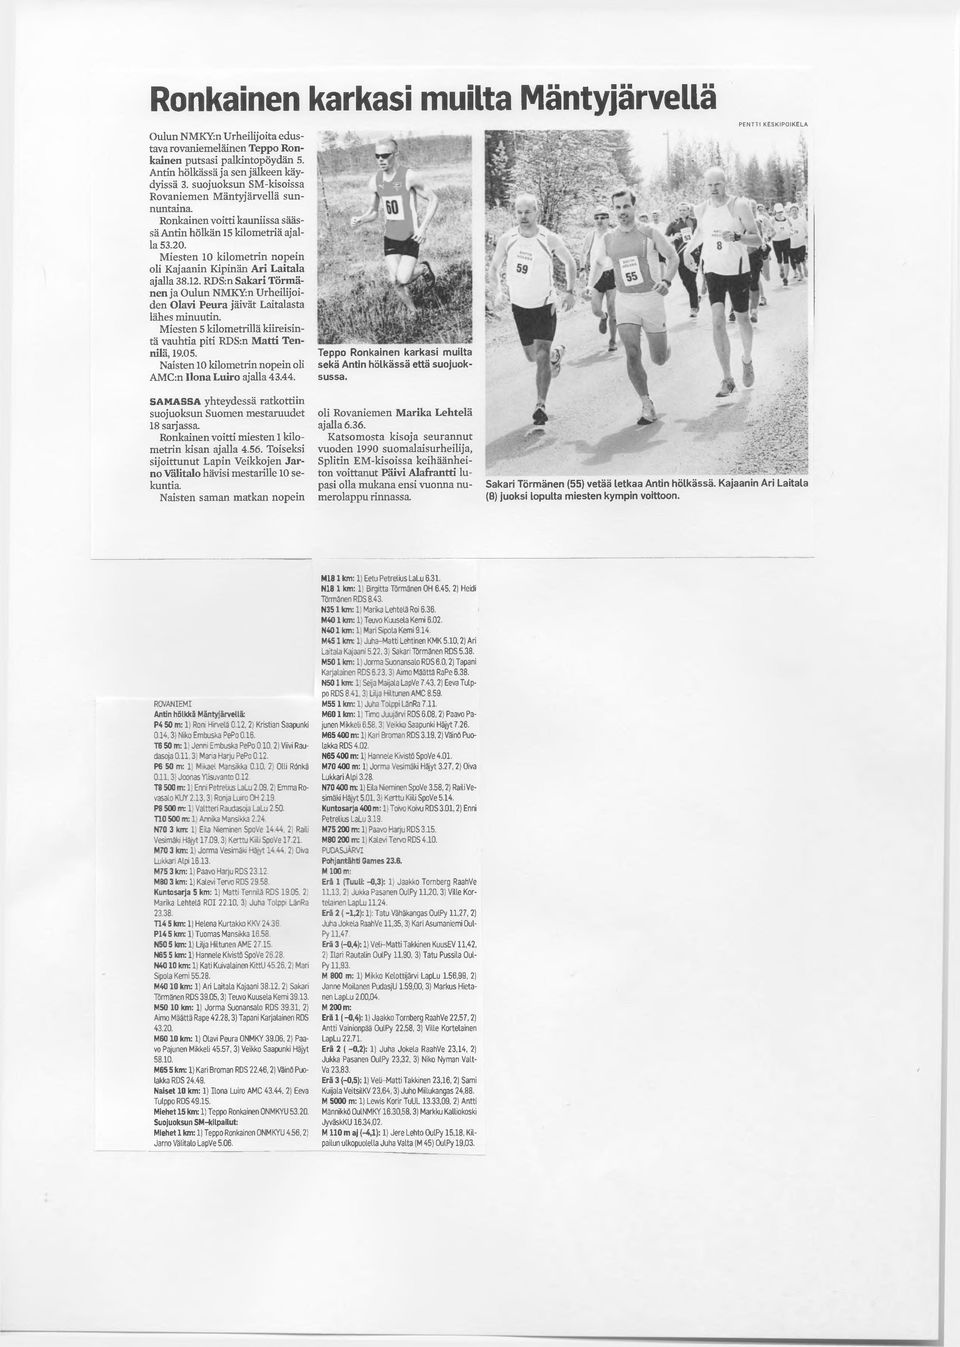 Miesten 10 kilometrin nopein oli Kajaanin Kipinän Ari Laitala ajalla 38.12. RDS:n Sakari Törmänen ja Oulun NMKYin Urheilijoiden Olavi Peura jäivät Laitalasta lähes minuutin.